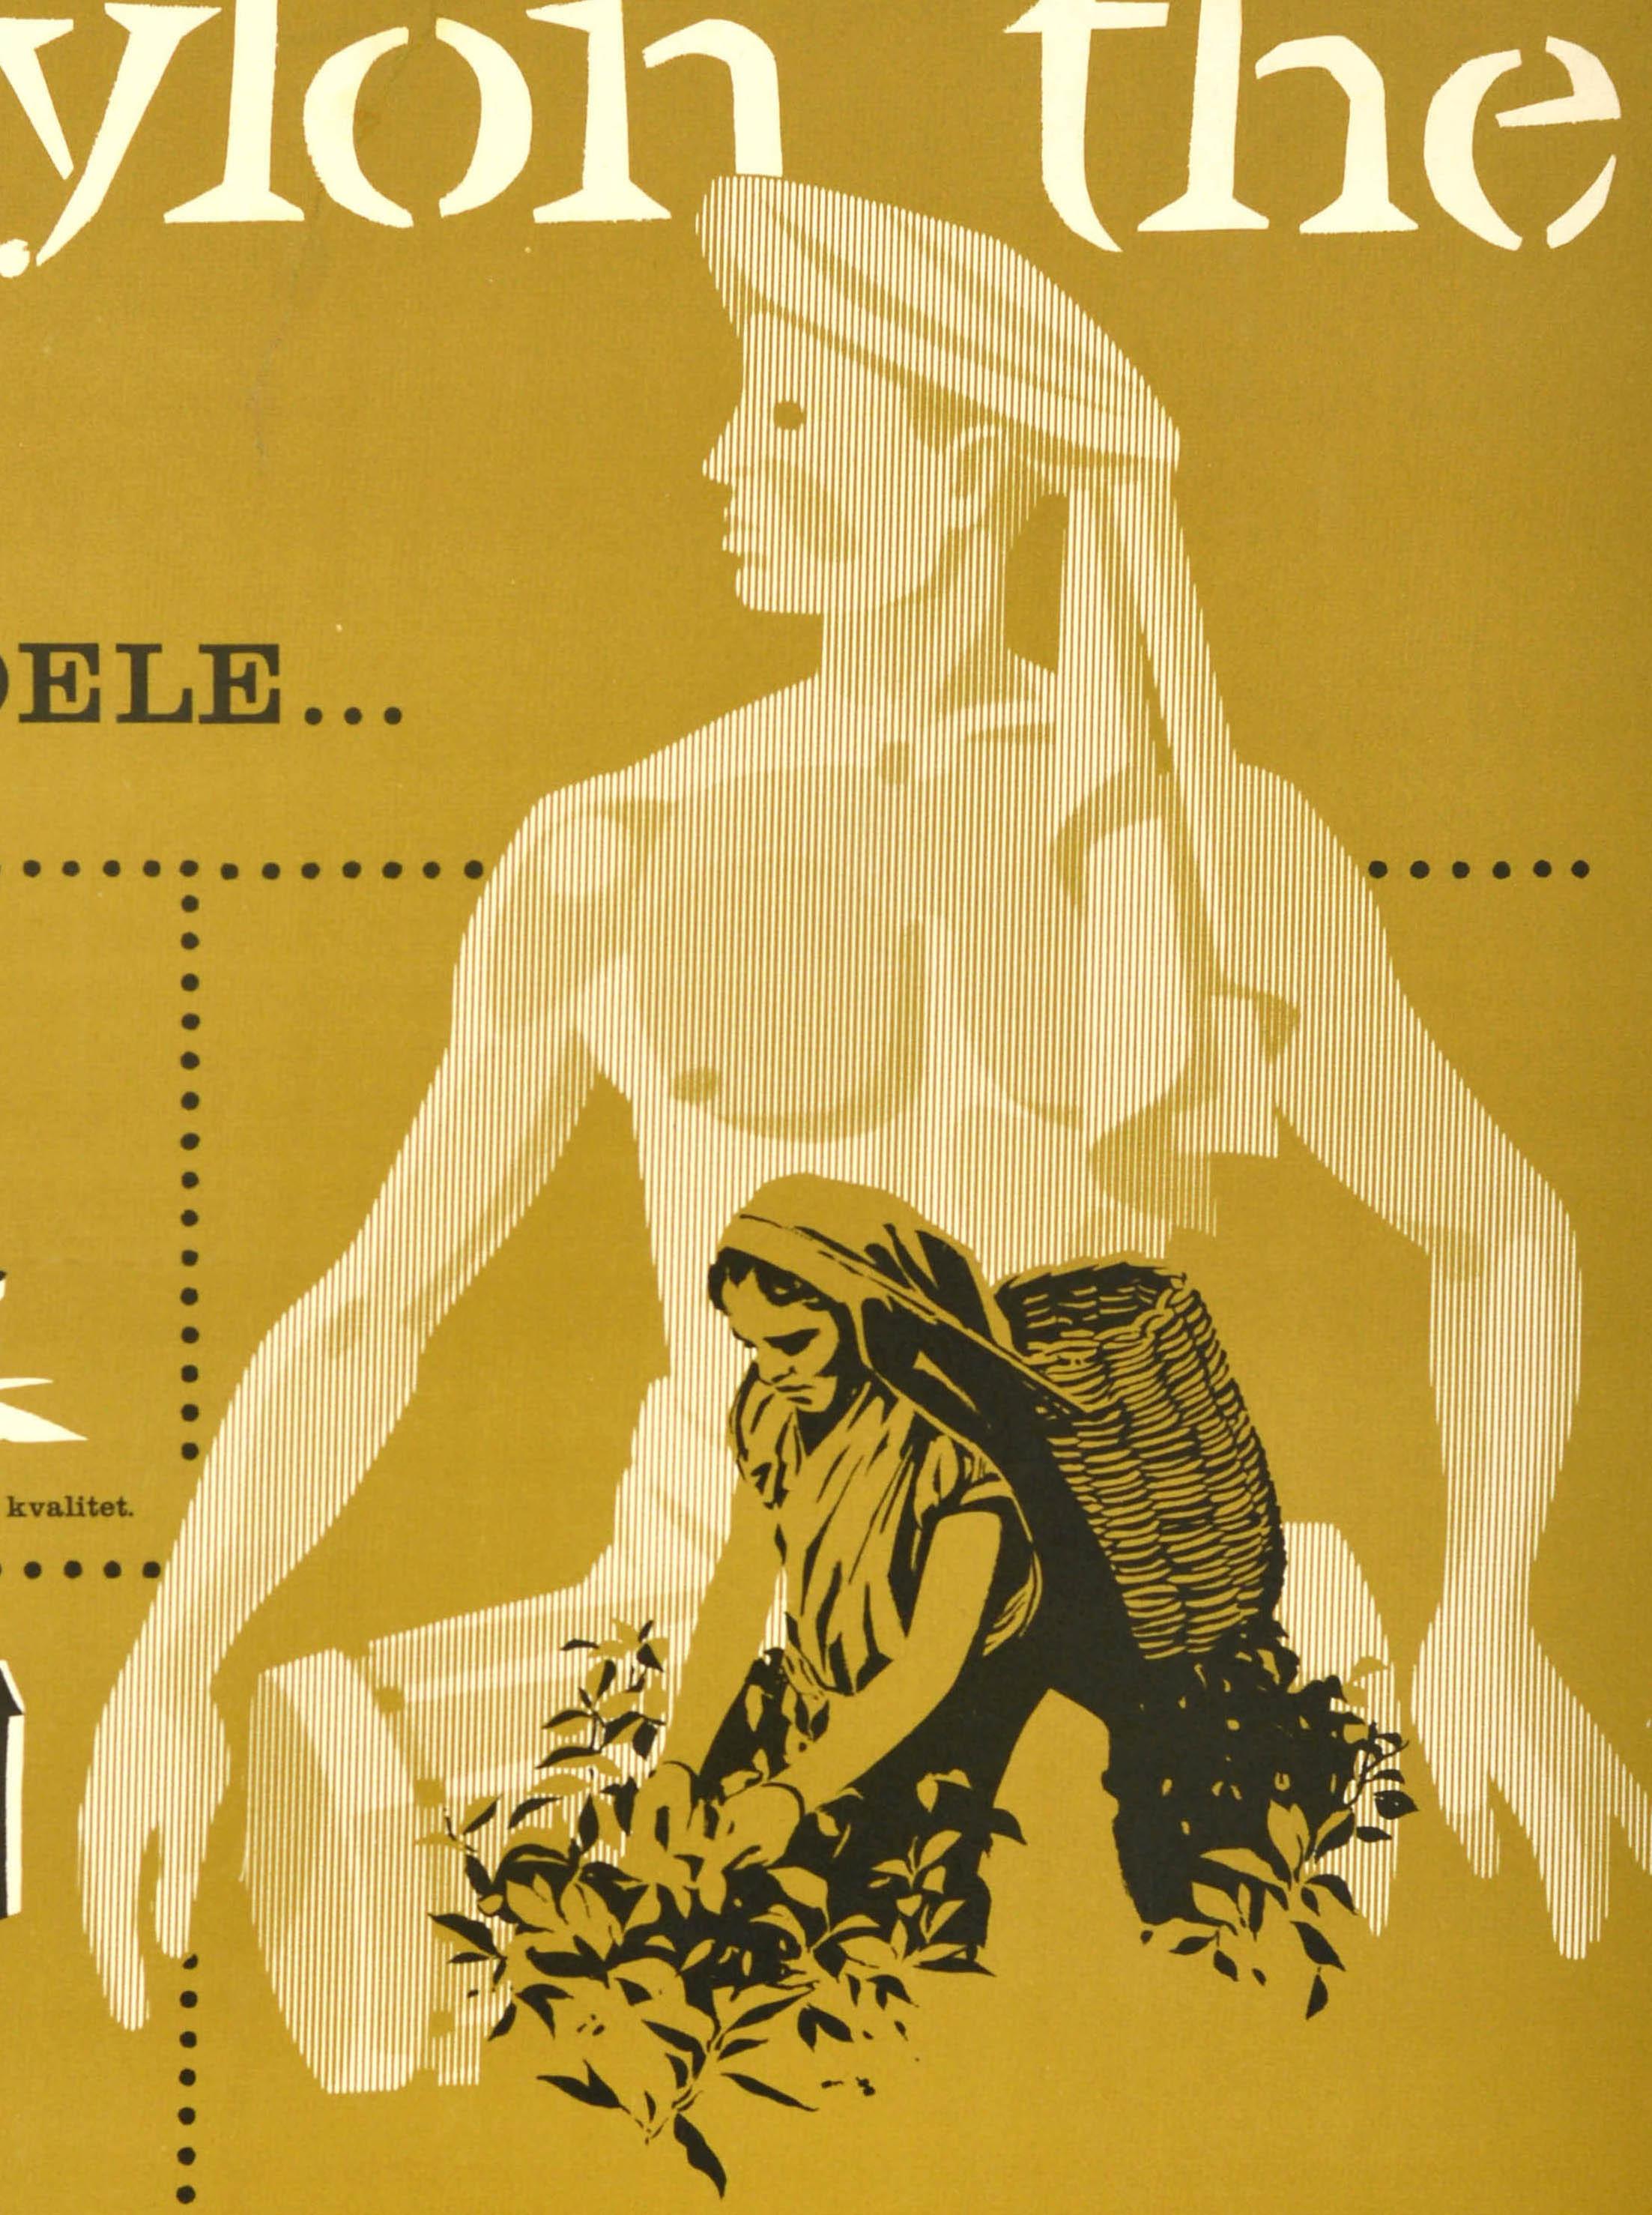 Affiche publicitaire vintage originale pour Ceylon The / Ceylon Tea représentant une cueilleuse de thé et des illustrations comprenant un microscope, un reçu, une bouilloire sur une flamme, une théière et une tasse et une soucoupe avec une liste de